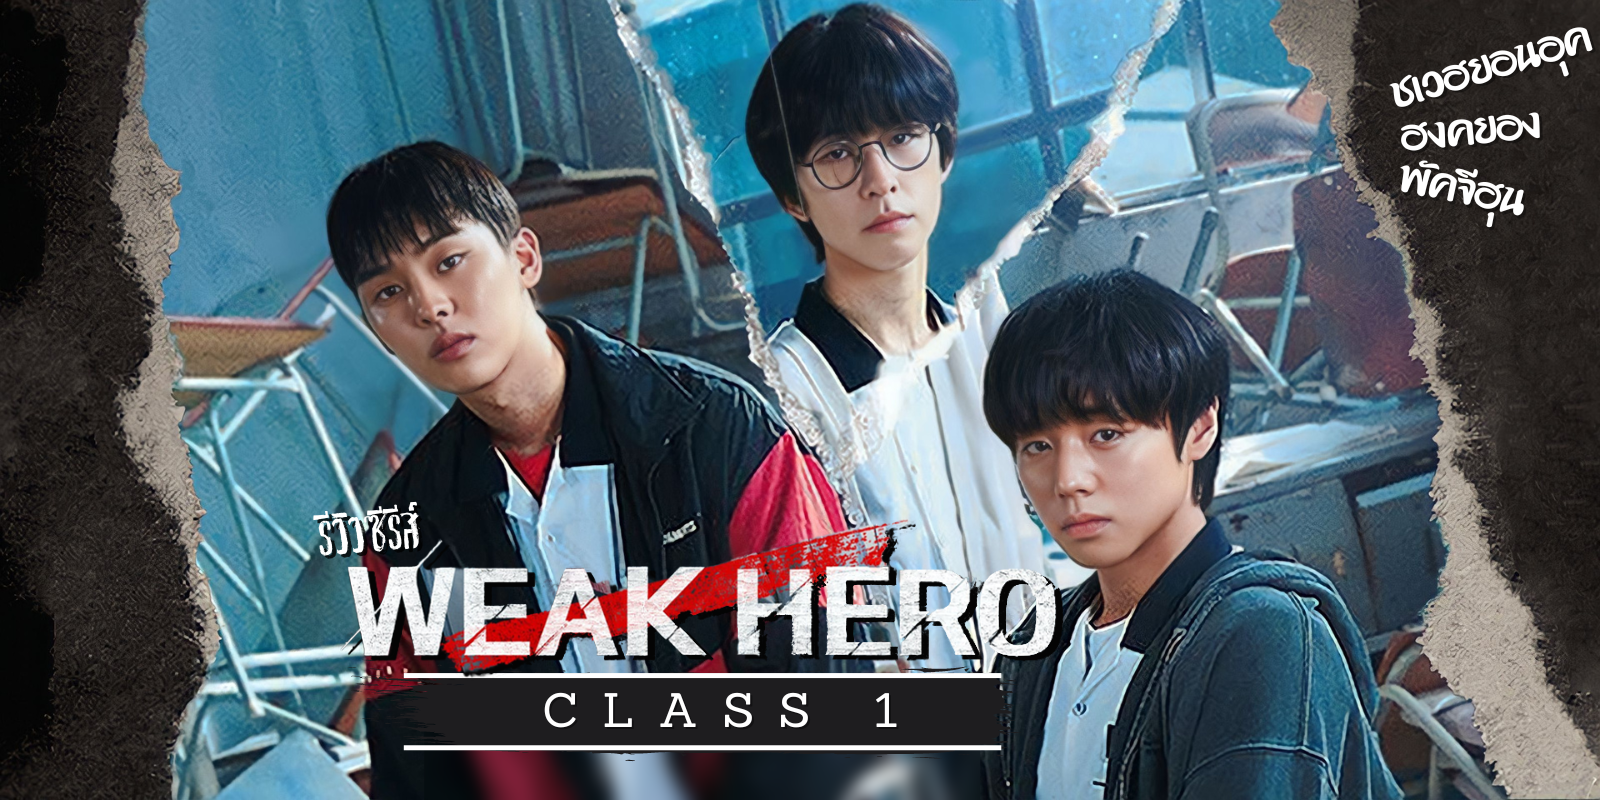 รีวิว Weak Hero Class 1 ซีรีส์แนววัยรุ่น แอ็คชั่น ดราม่า ผลงานของพัคจีฮุนกับชเวฮยอนอุก สนุกทุกอณู